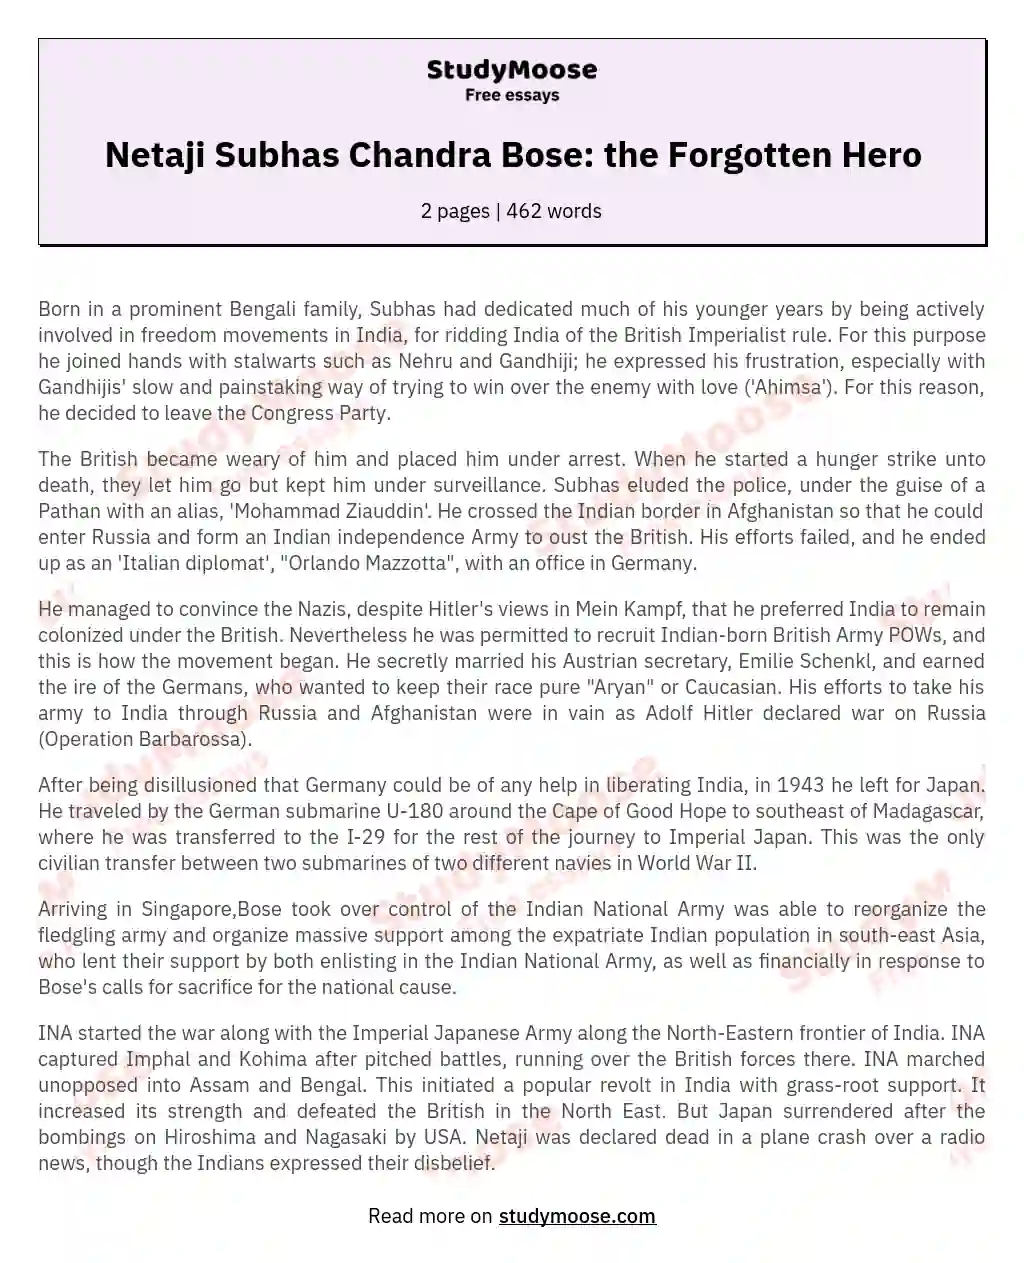 Netaji Subhas Chandra Bose: the Forgotten Hero essay